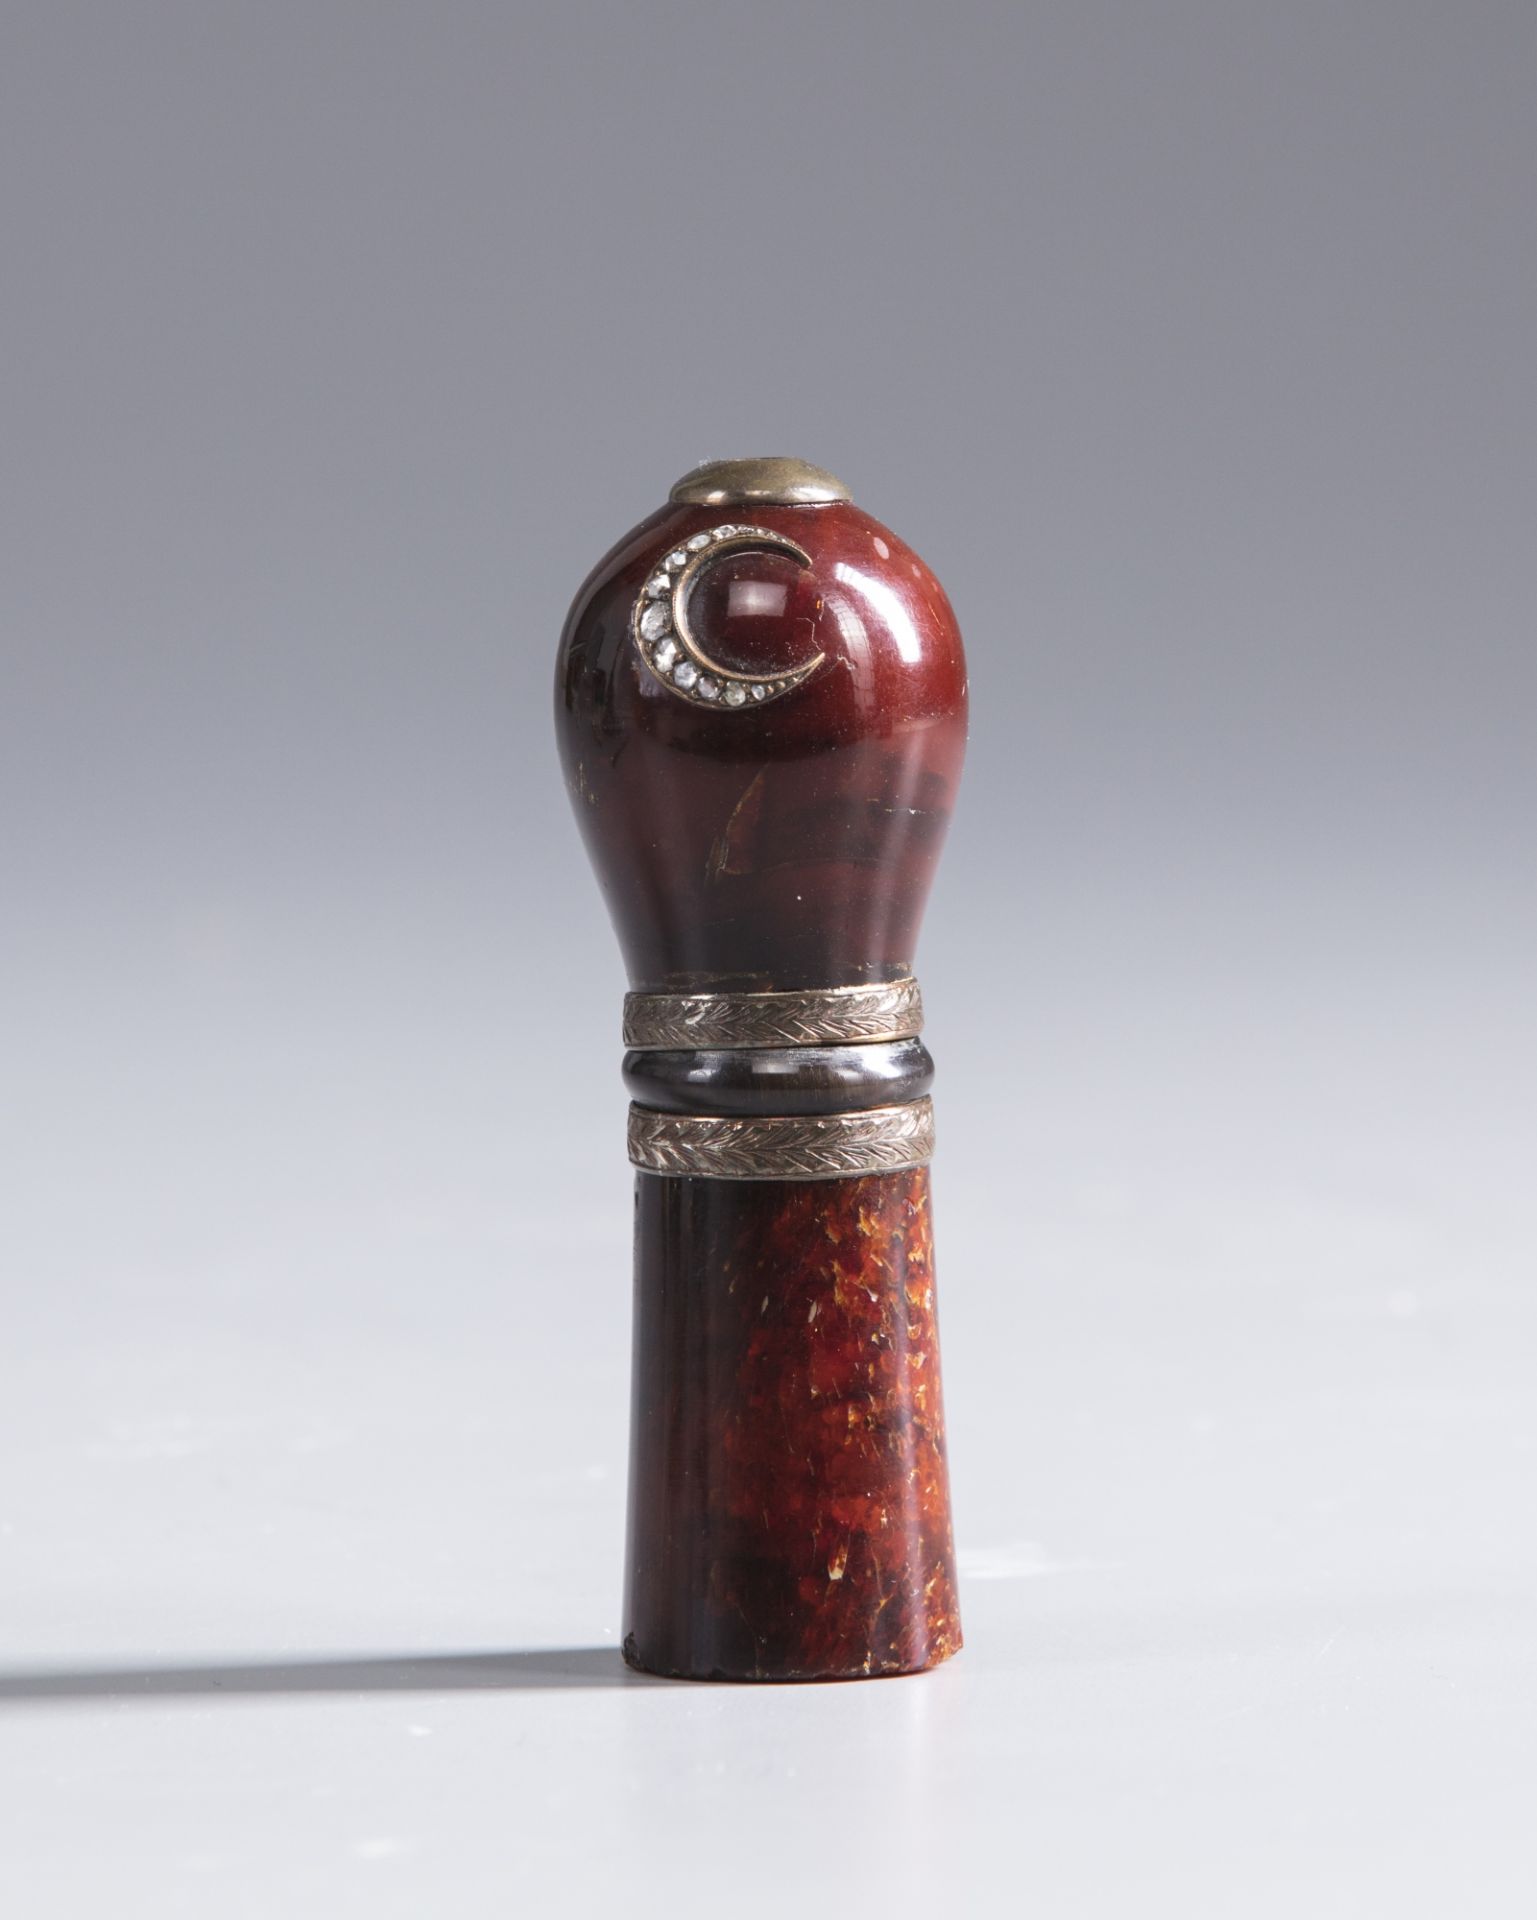 An Ottoman cherry amber mouth piece